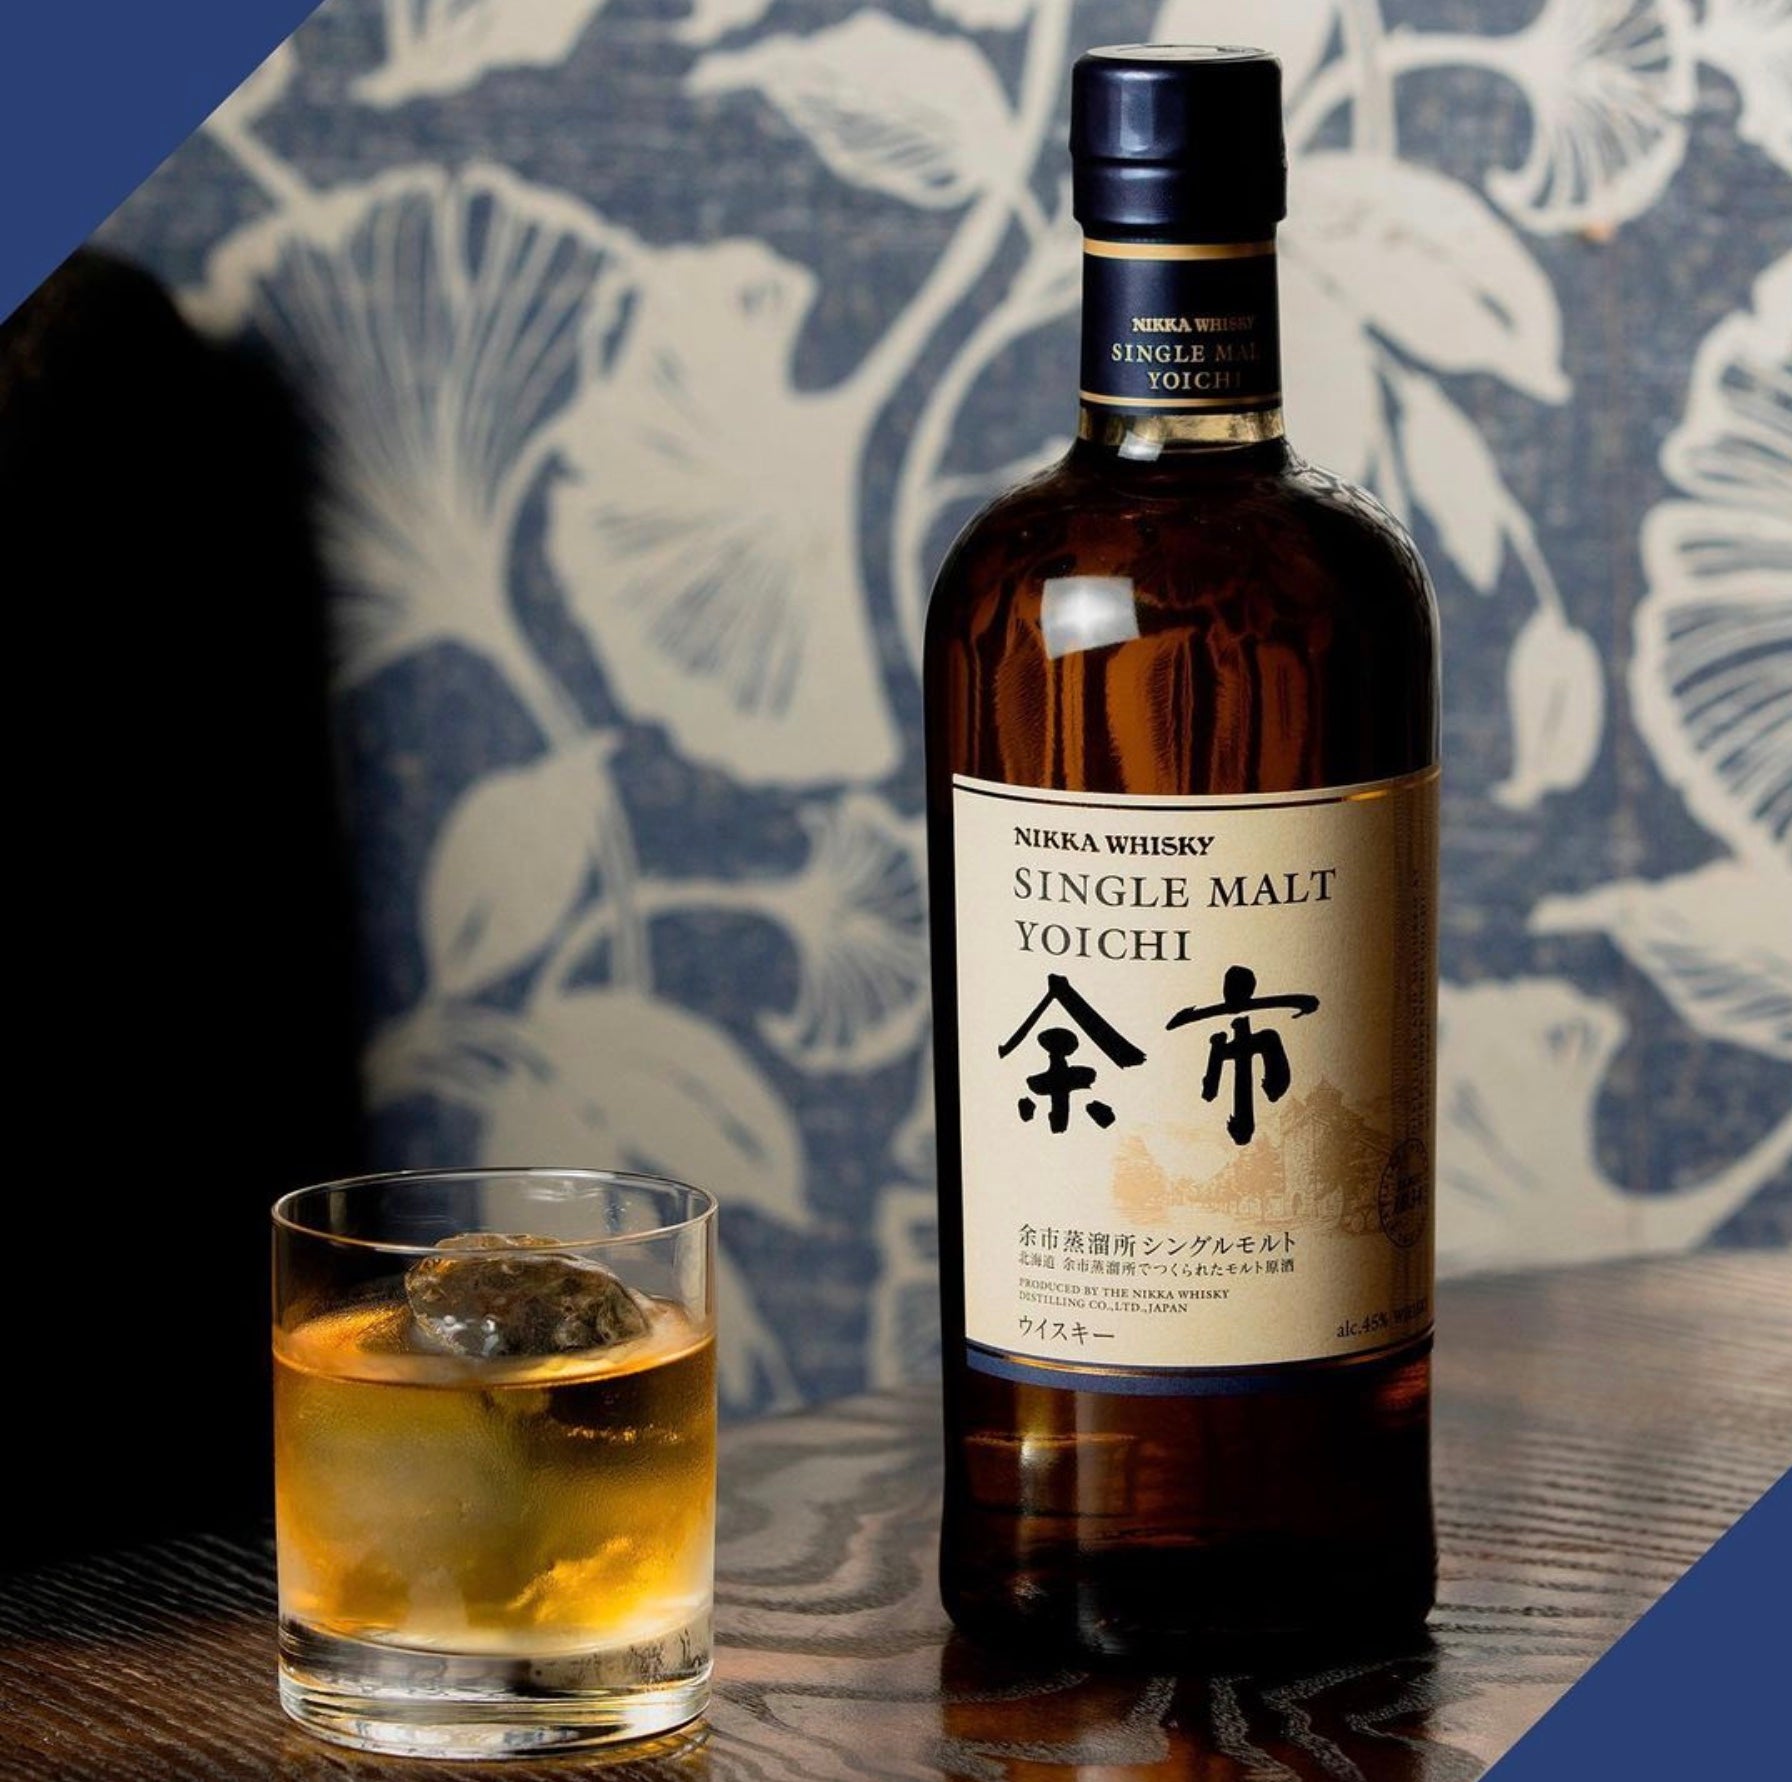 Nikka Miyagikyo Distillery Single Malt Whisky